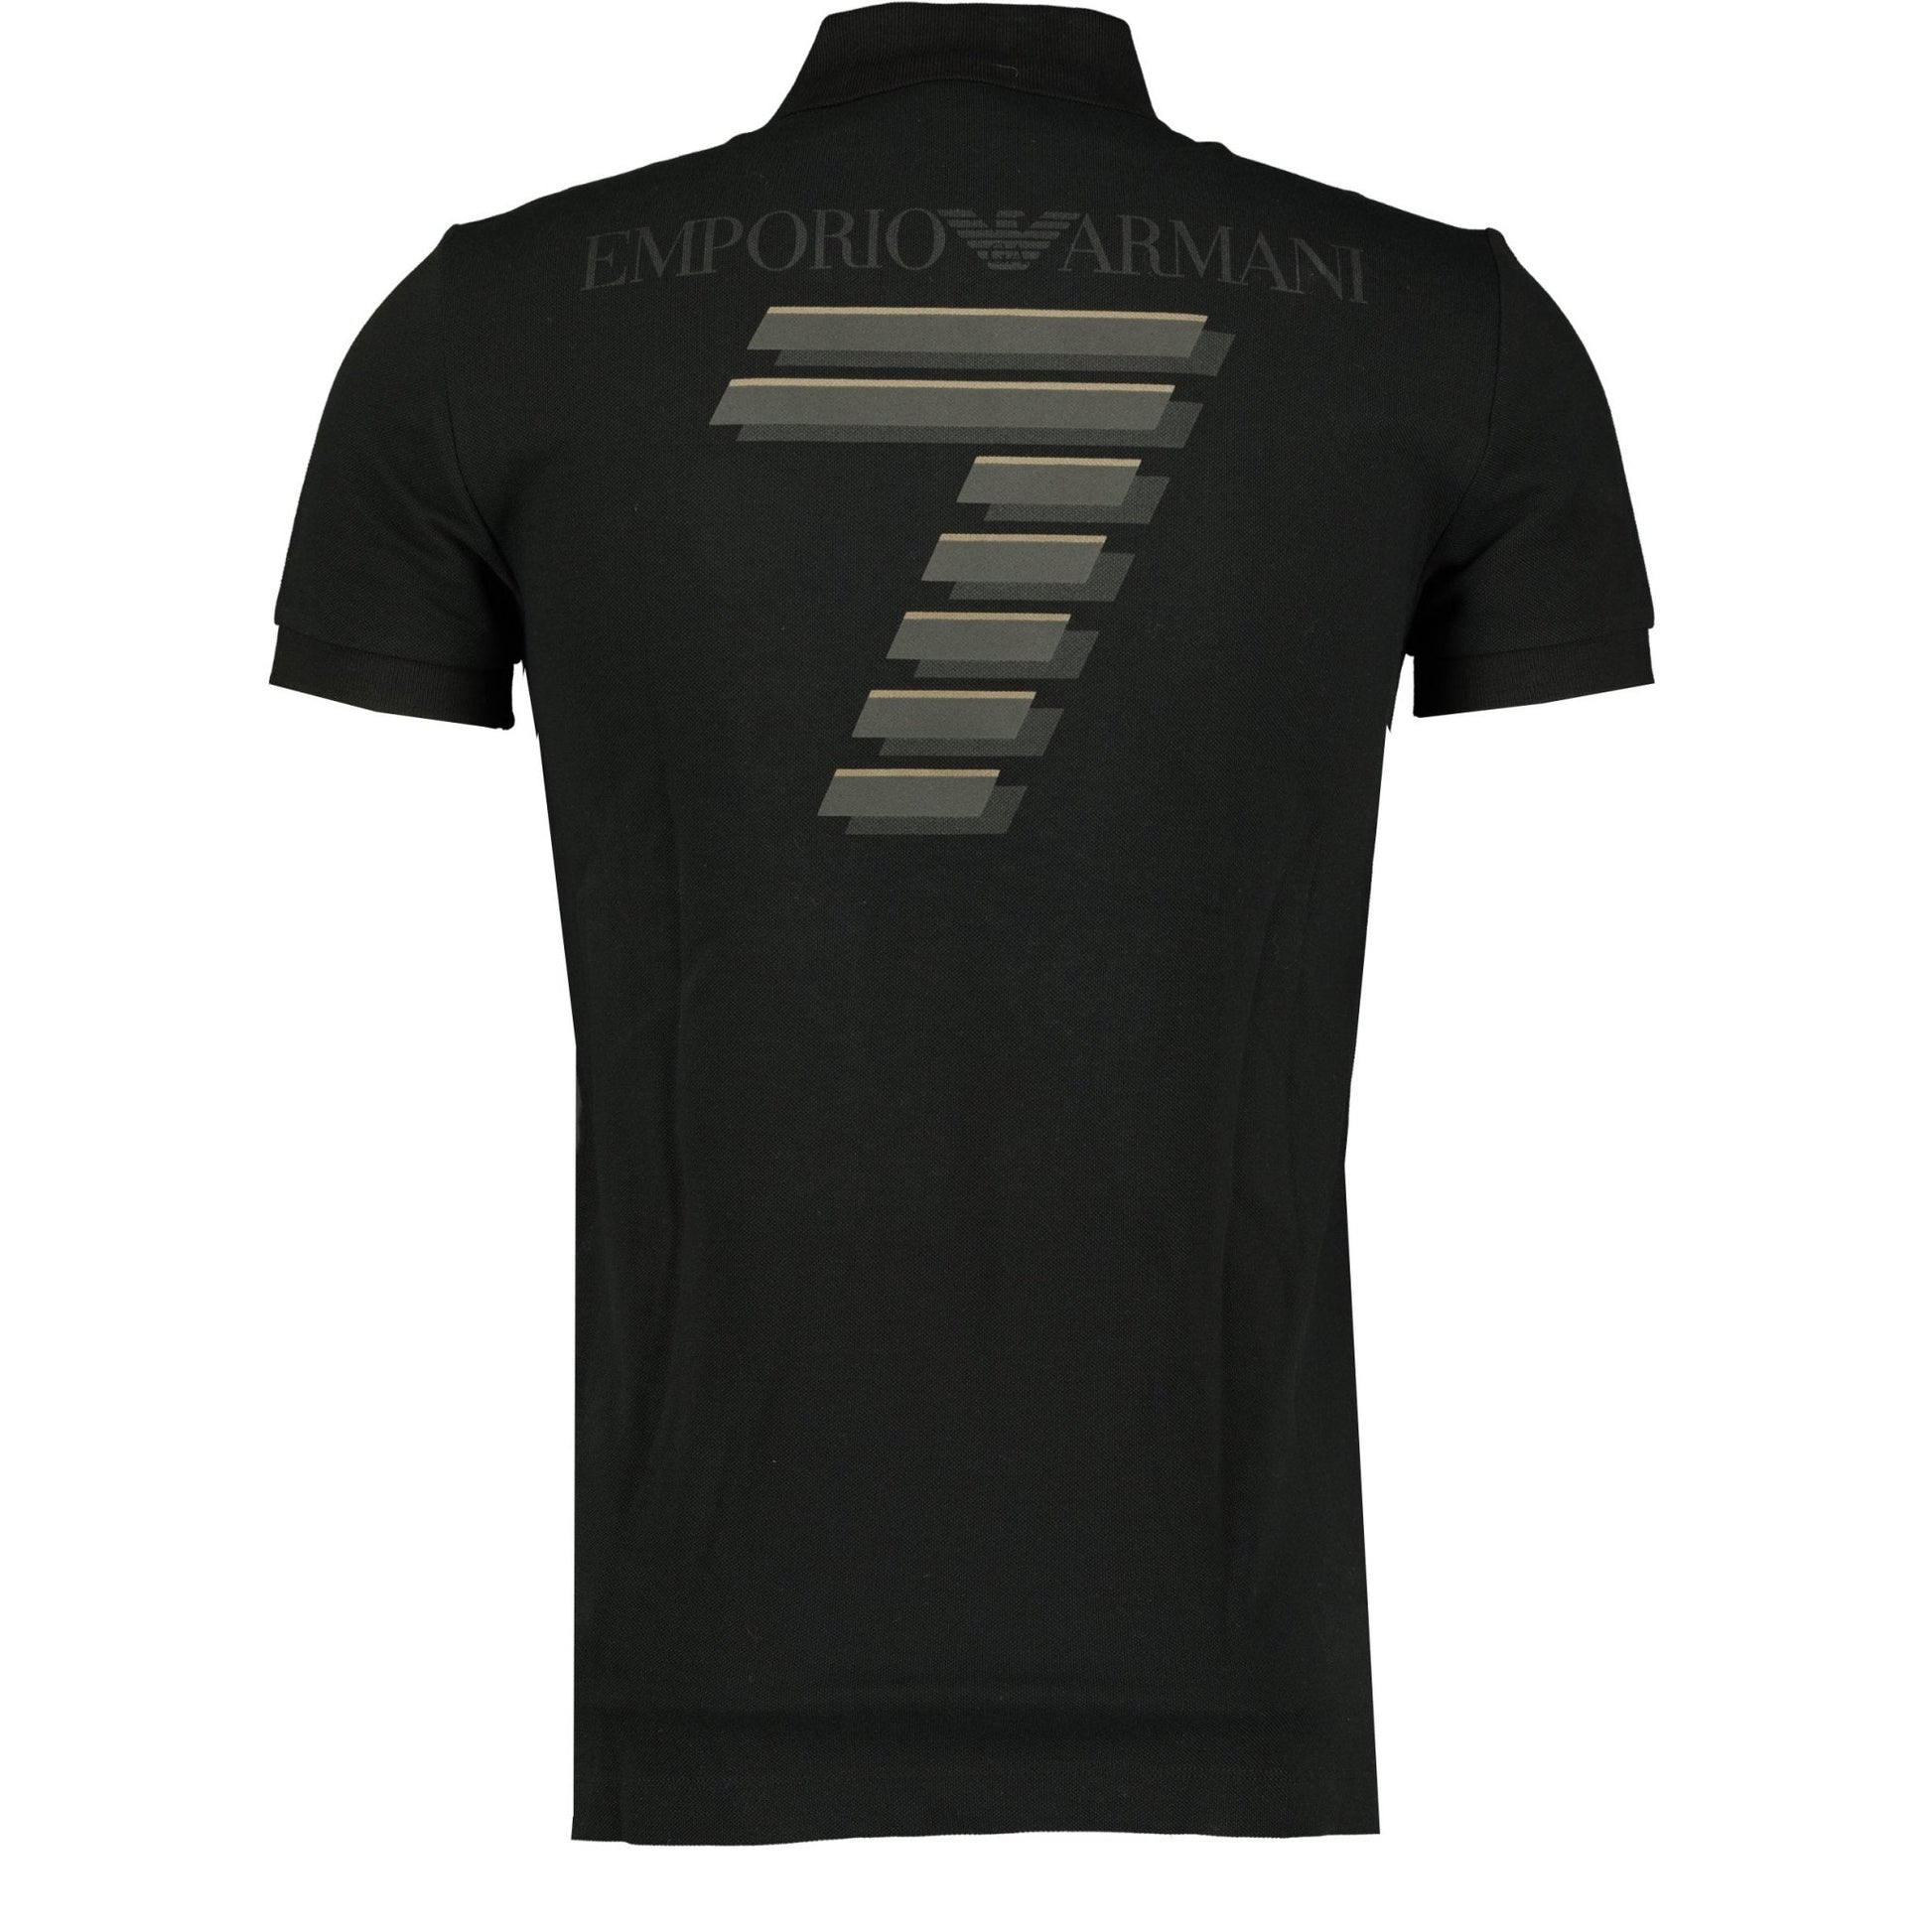 Emporio Armani Black Short Sleeve Pique Polo Tshirt - LinkFashionco